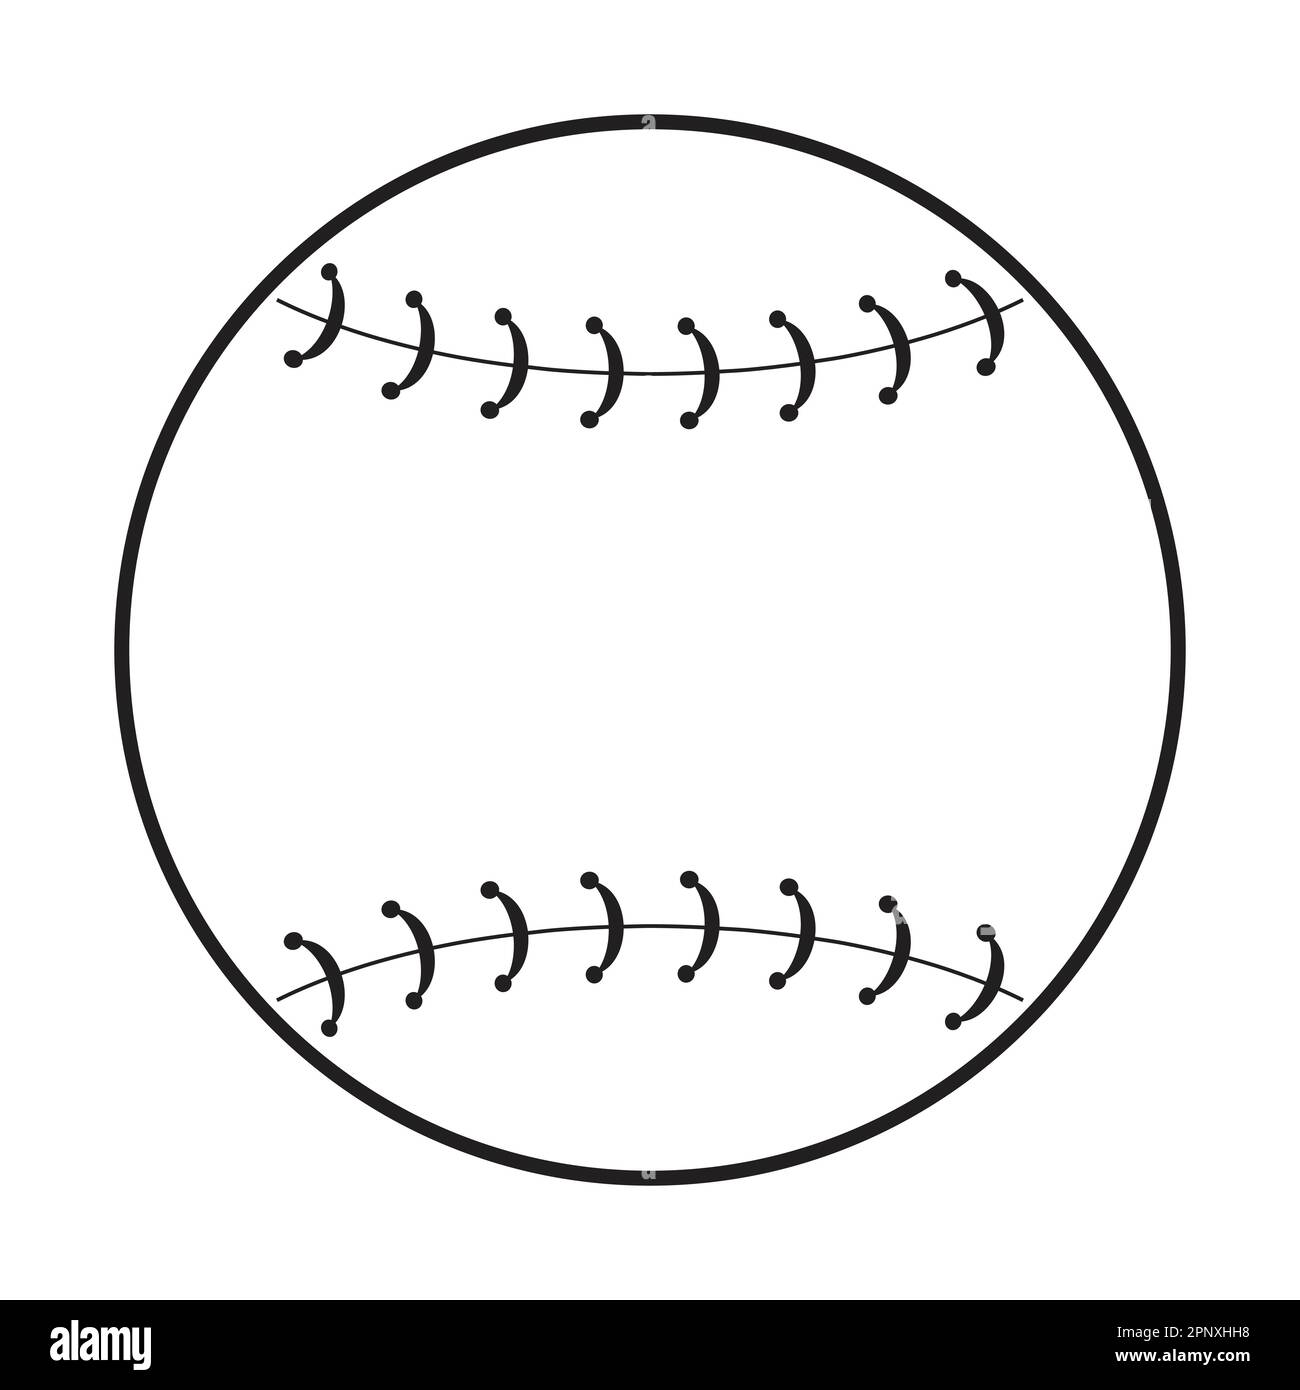 Disegno di icone vettoriali per la palla da tennis. Icona sport flat. Illustrazione Vettoriale